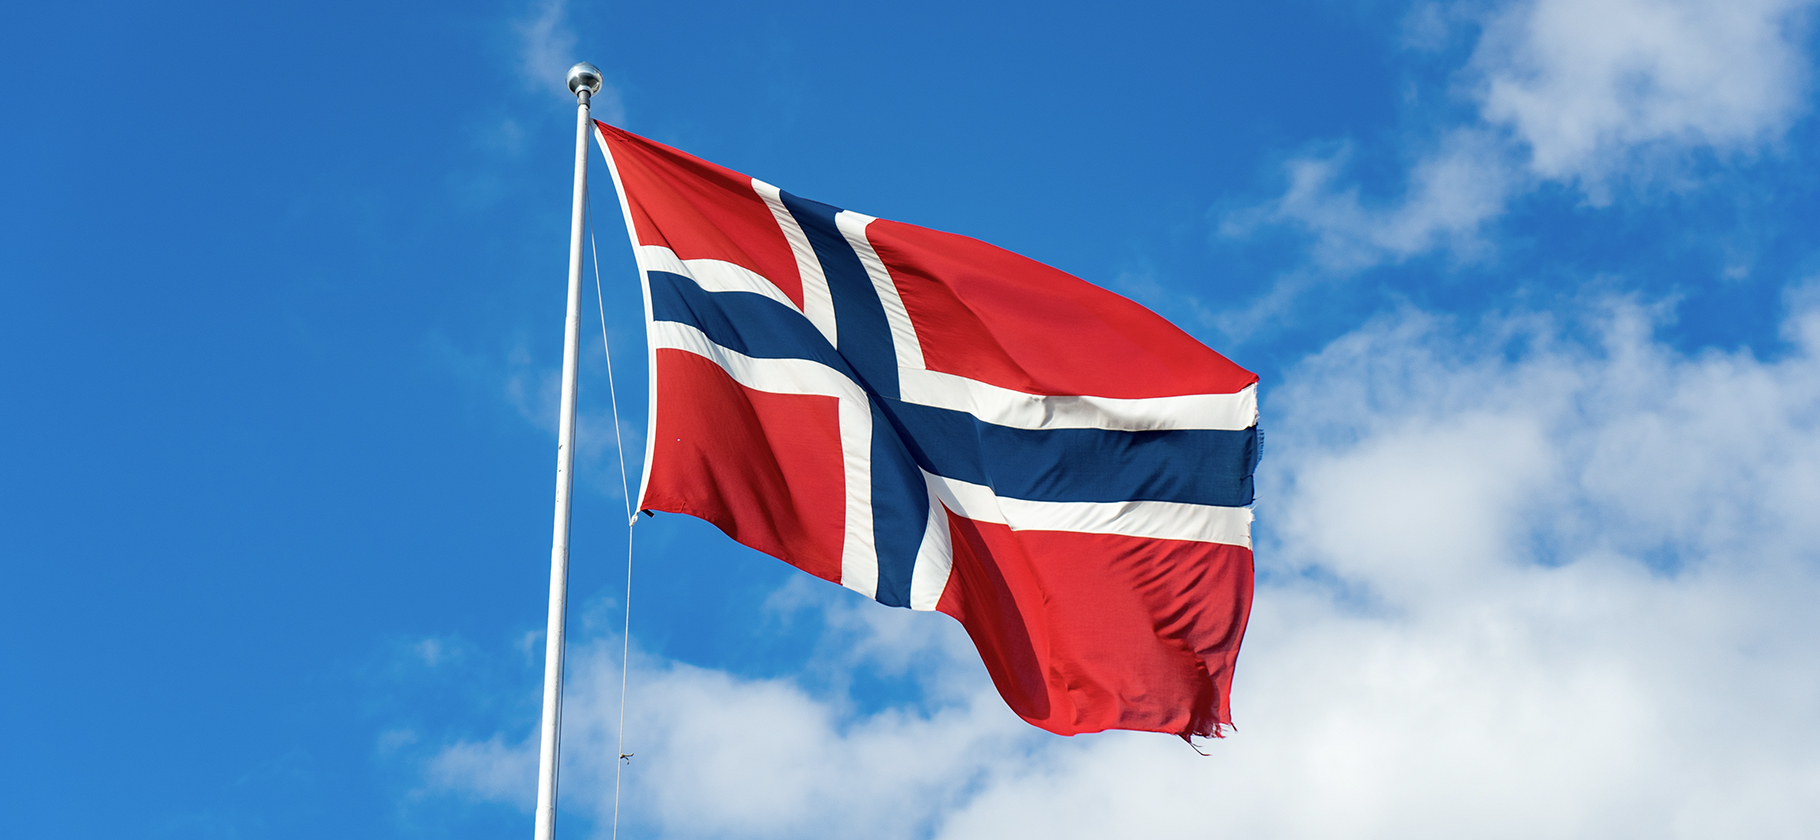 Визовые центры Норвегии перестали принимать заявления на шенгенские визы и ВНЖ